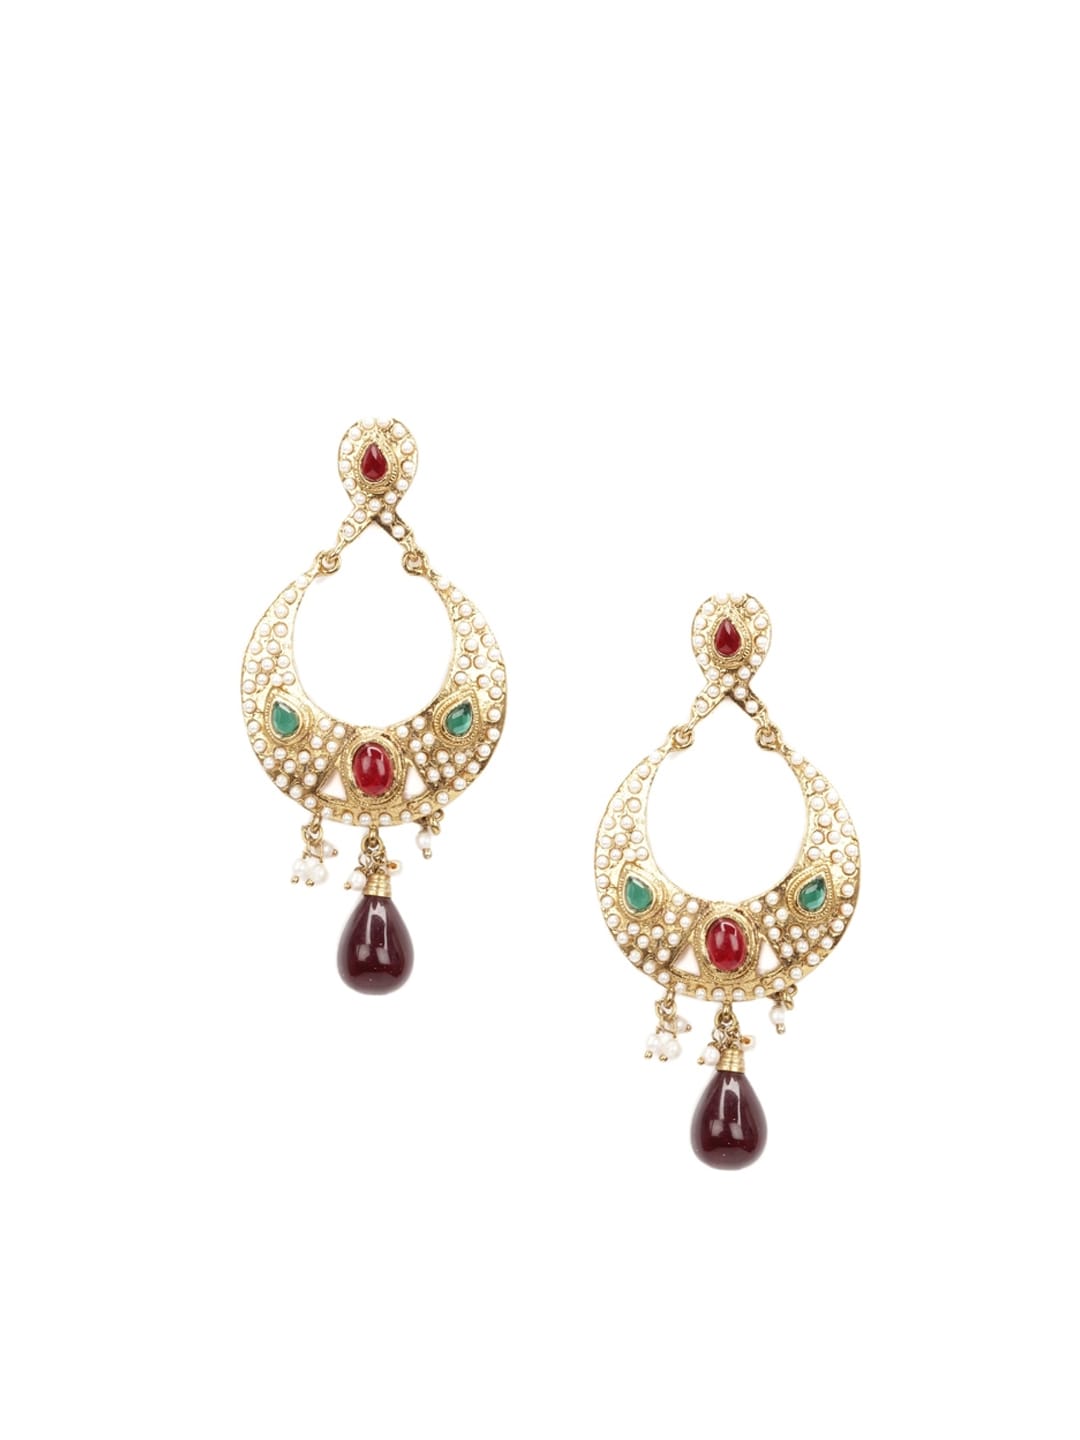 Royal Diadem Earrings